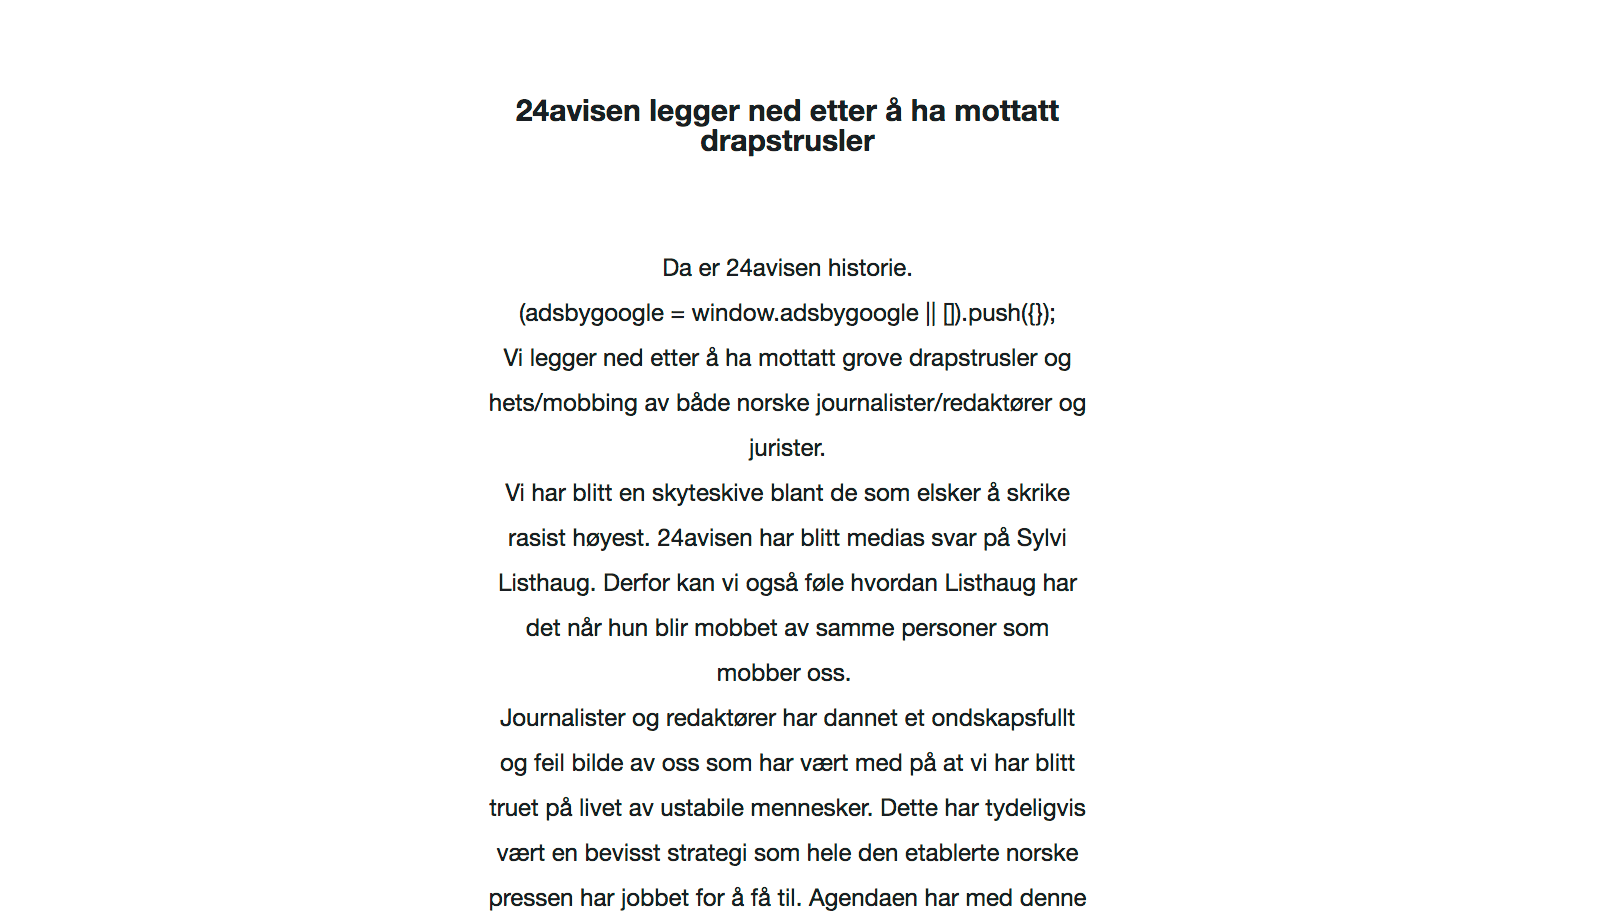 Dette avskjedsbrevet er det eneste som gjenstår av det innvandringskritiske nettstedet 24avisen.com, der det påstås at norske journalister, redaktører og jurister har kommet med drapstrusler mot driverne av nettavisen. 